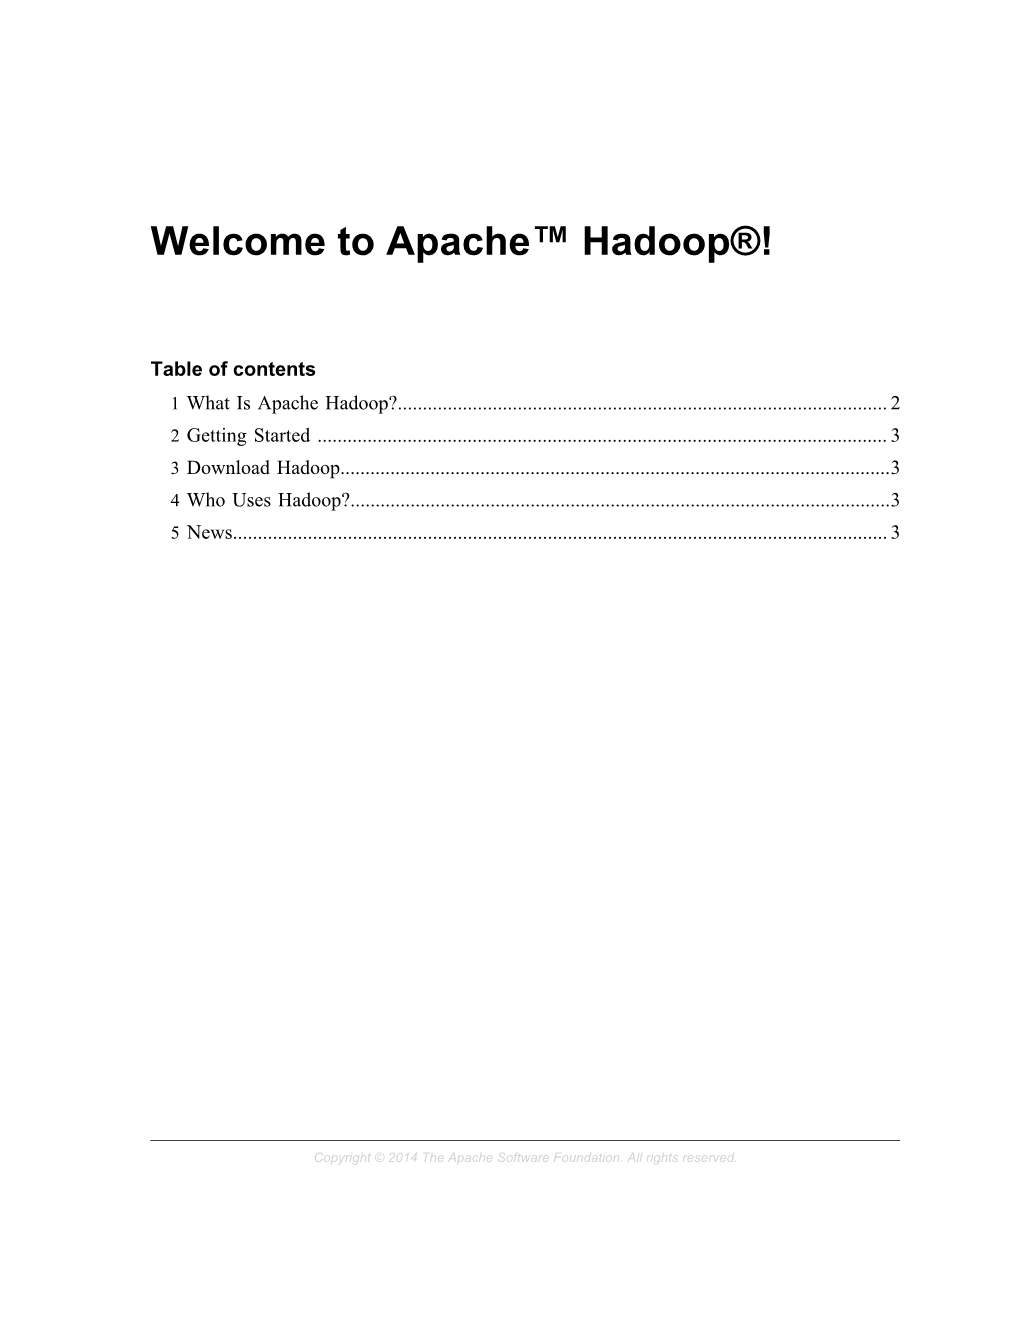 Apache™ Hadoop®!